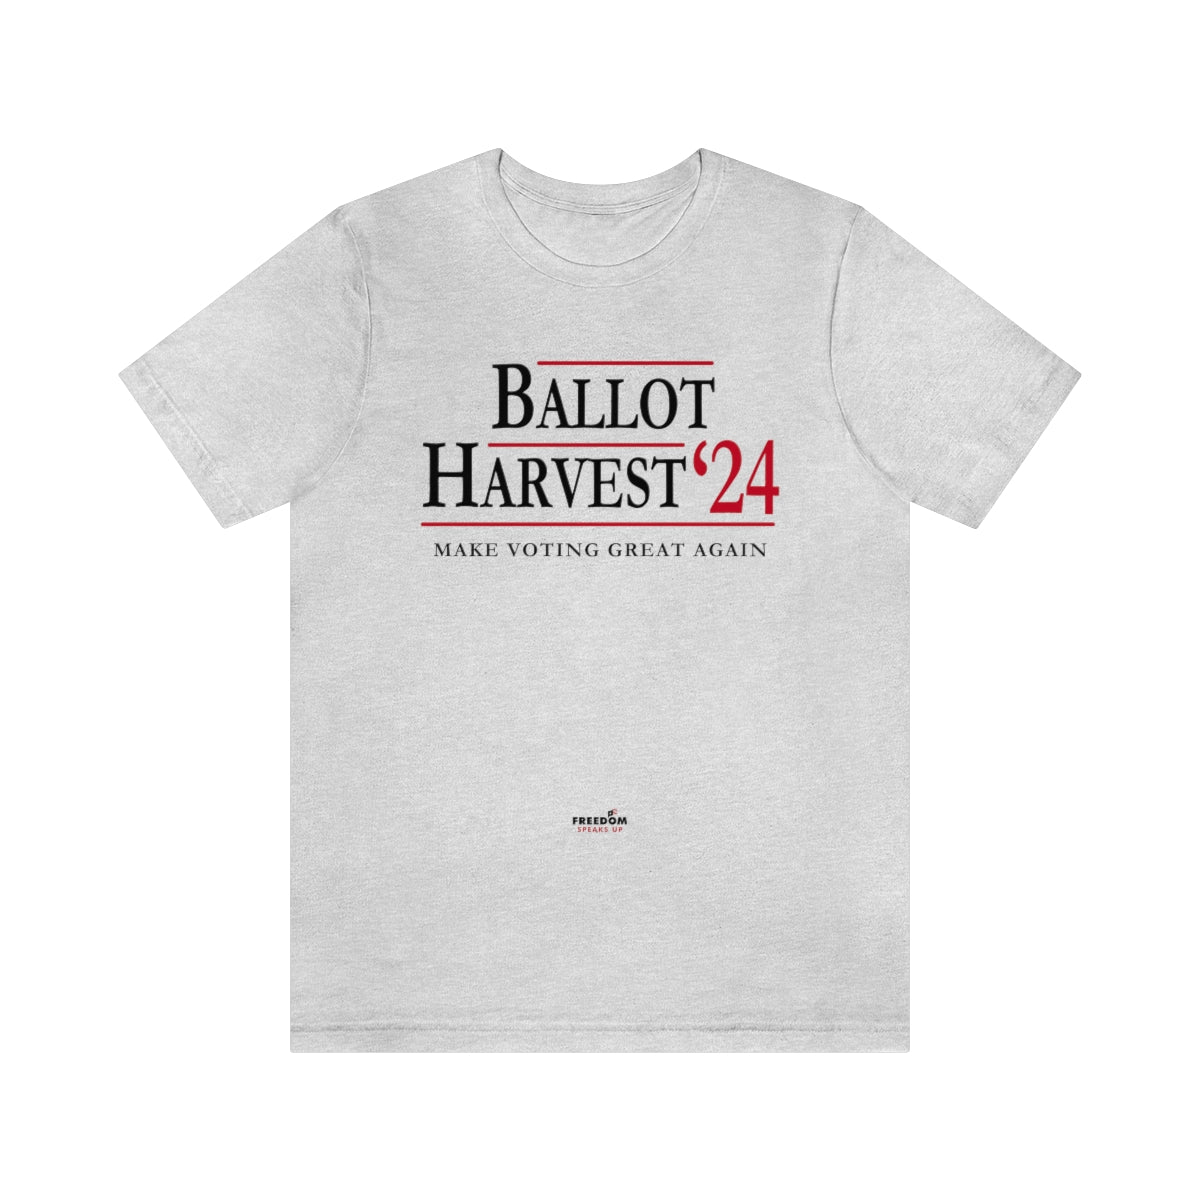 Ballot Harvest '24 Make Voting Great Again